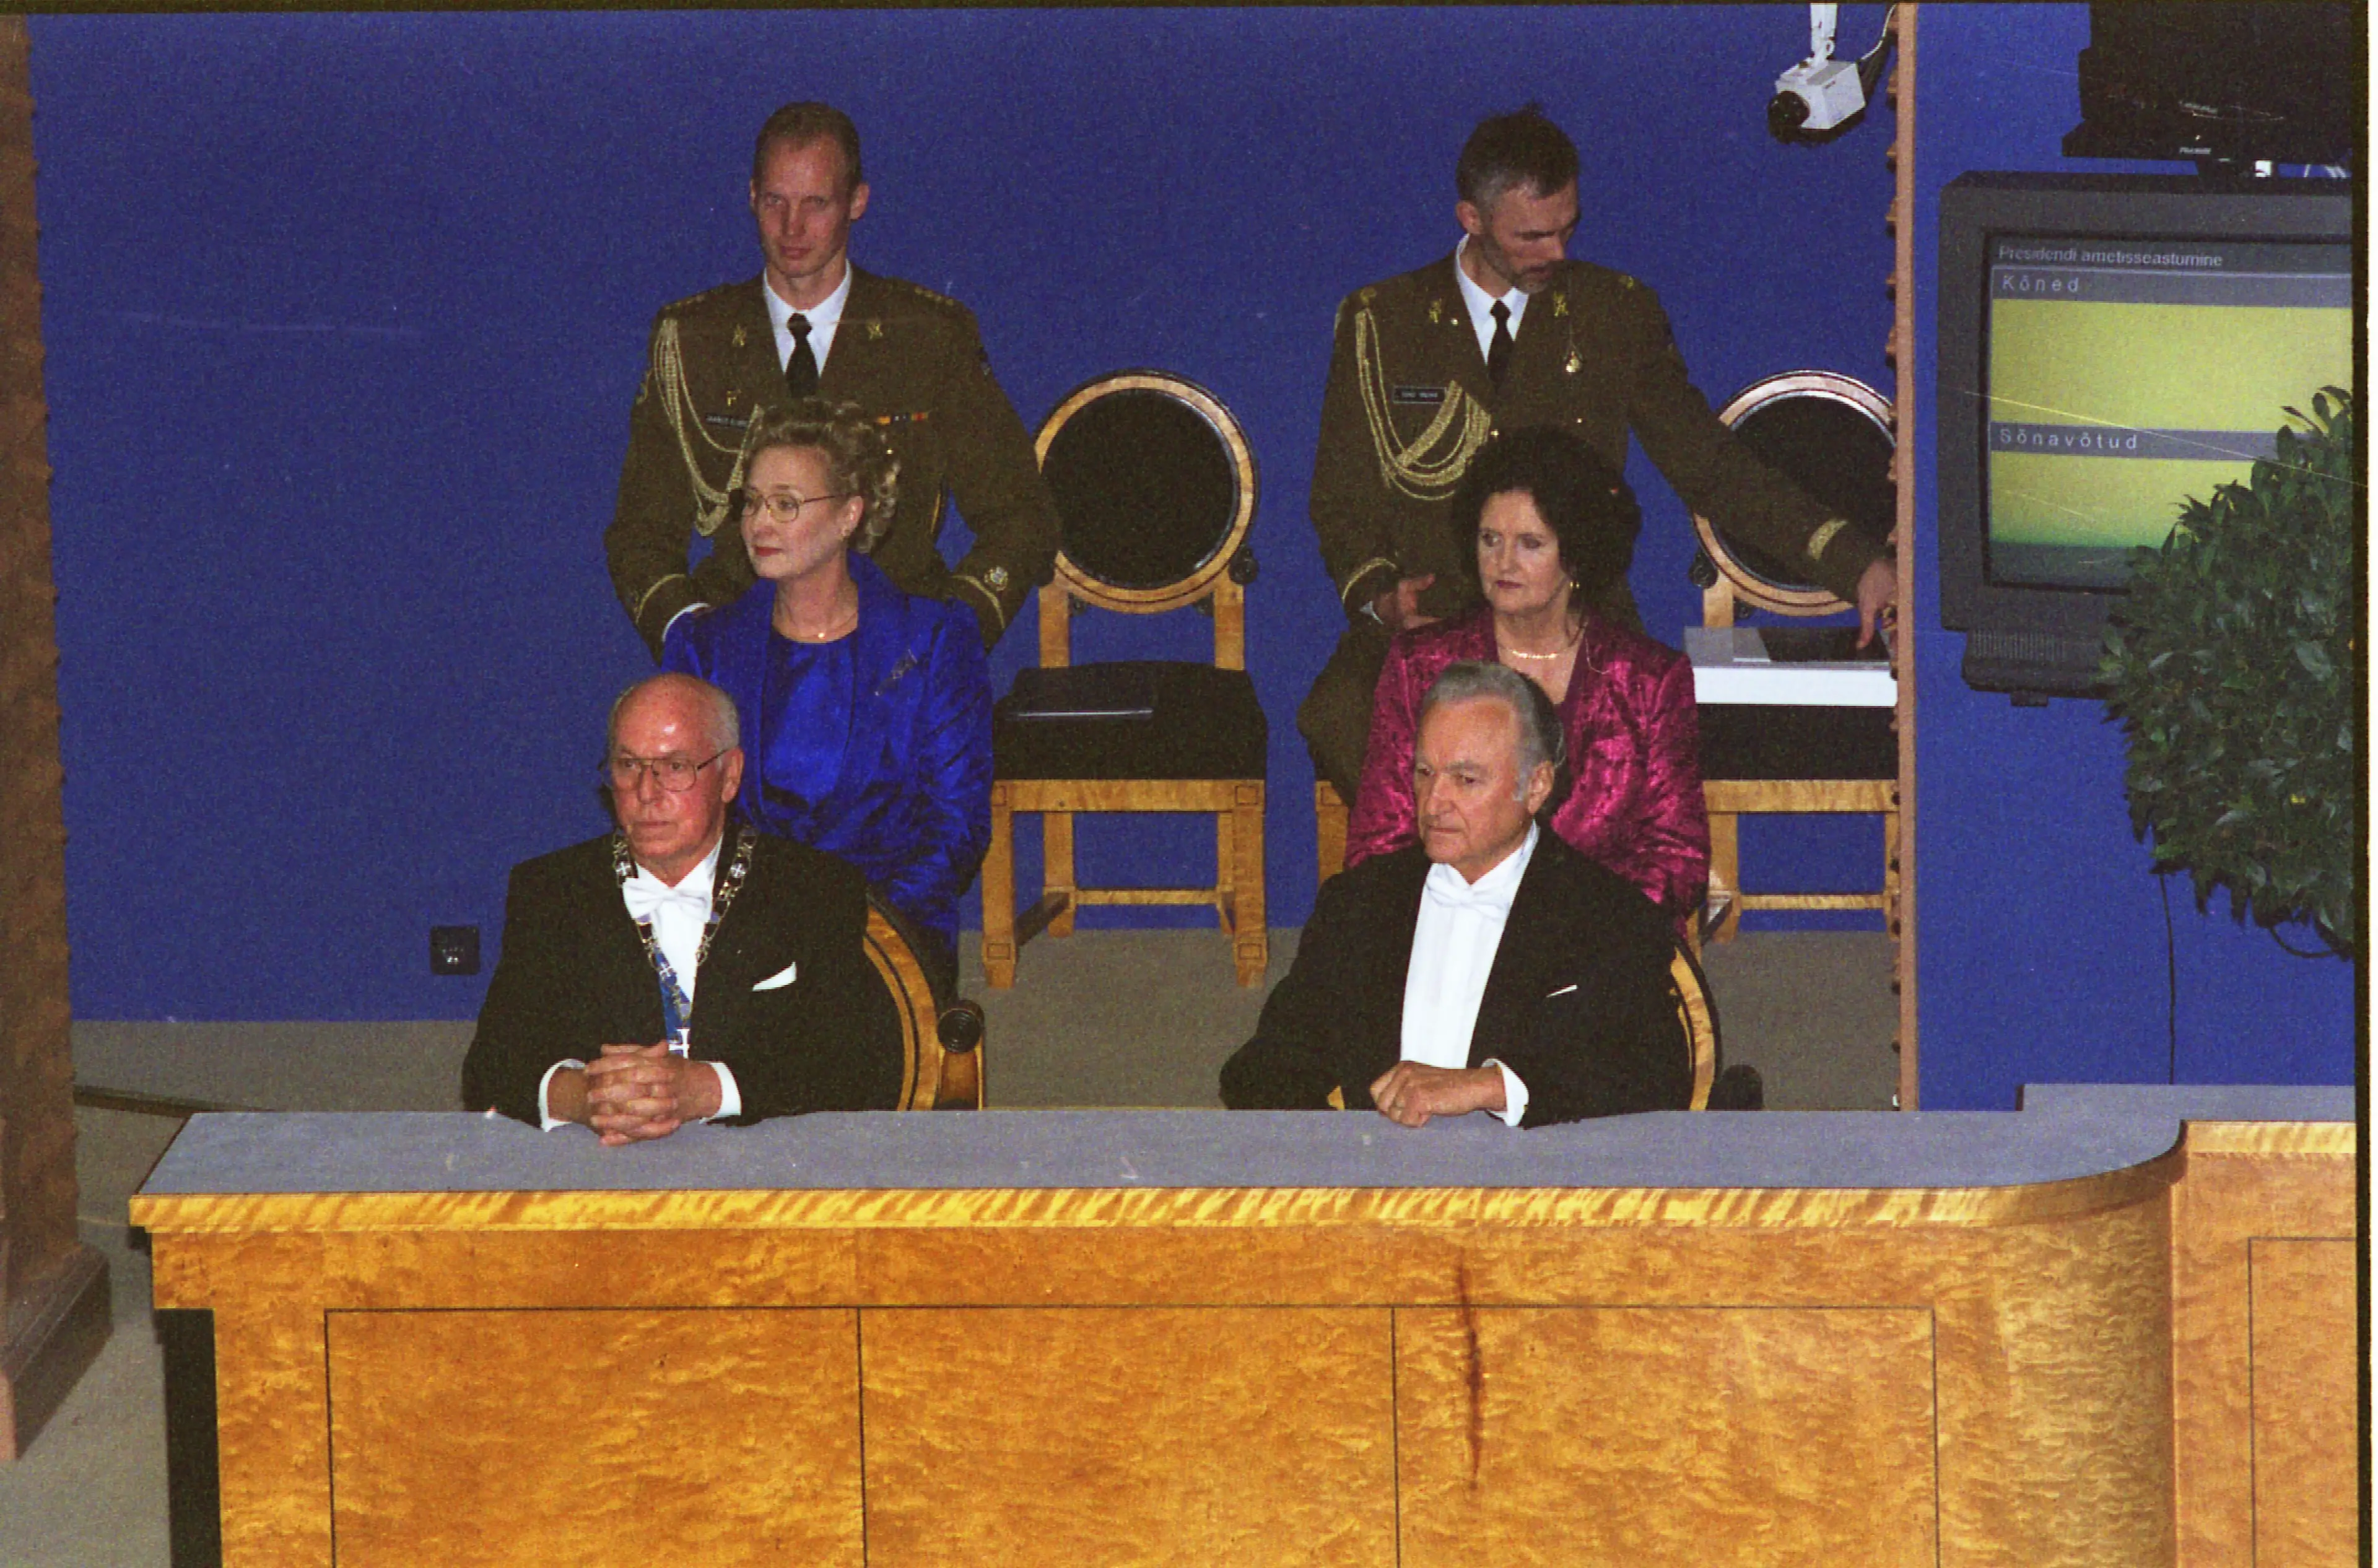 Ametist lahkuv president Lennart Meri ja ametisse astuv Arnold Rüütel Riigikogu saalis